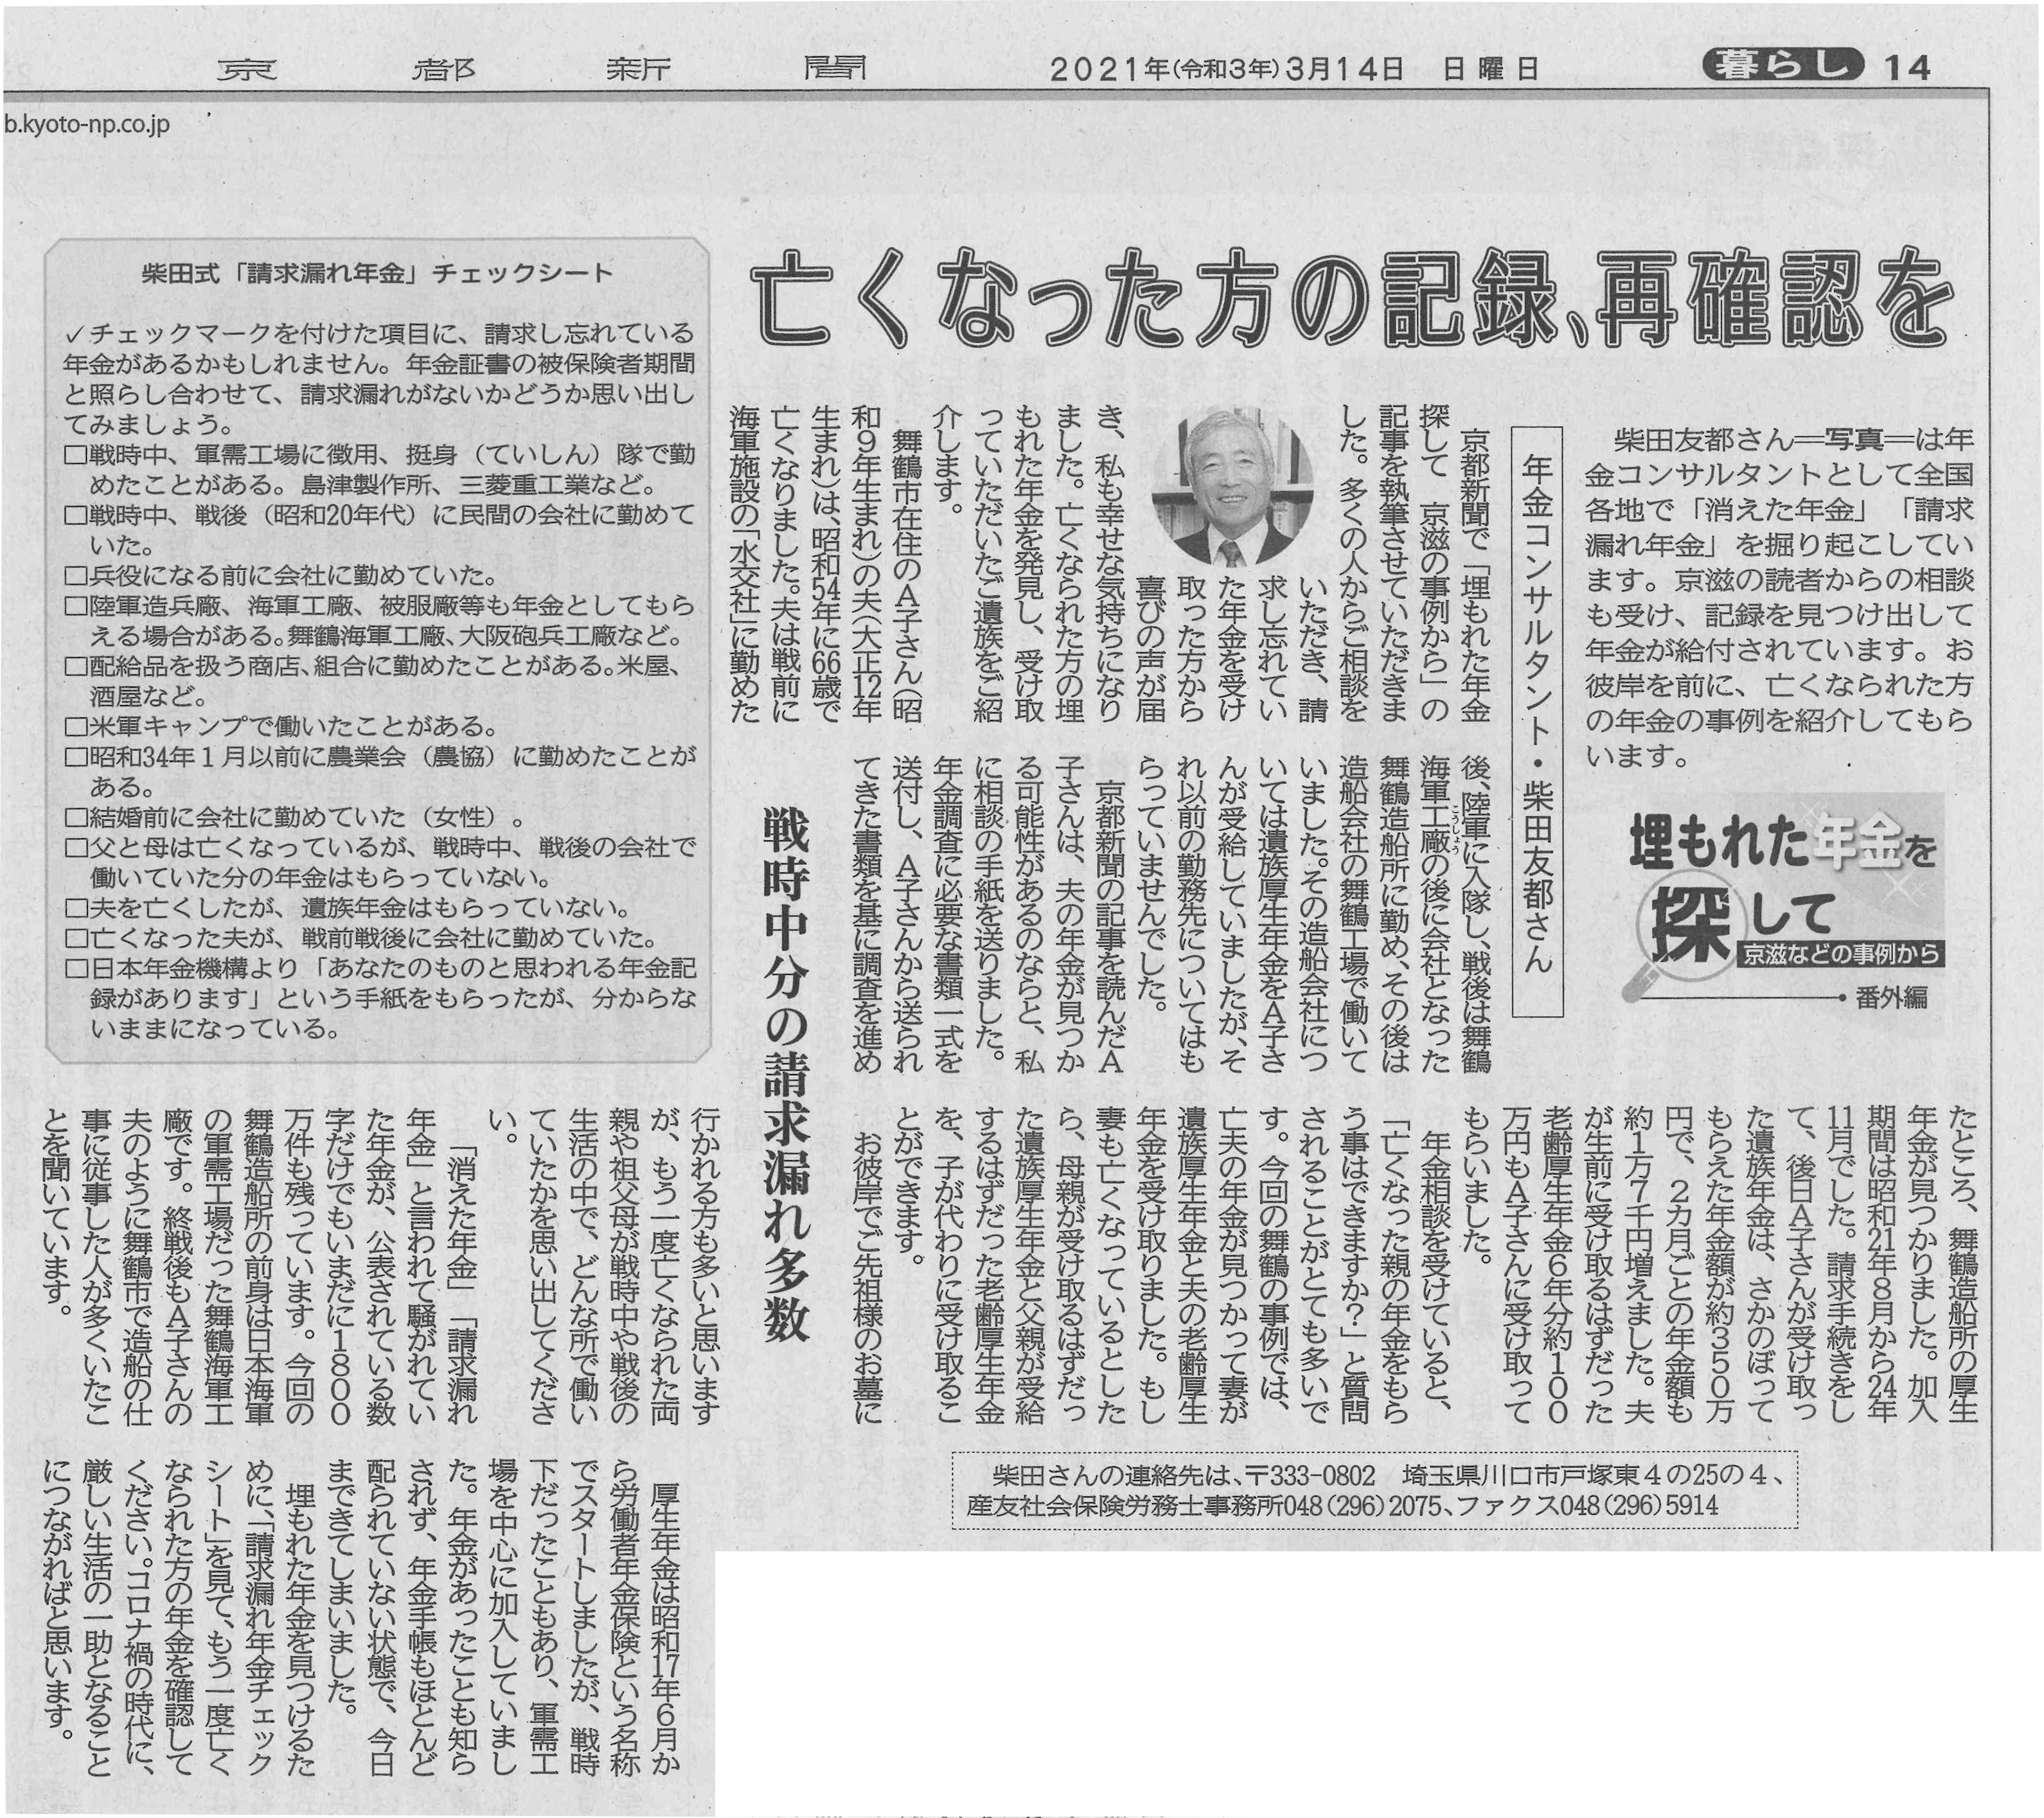 新聞イメージ　京都新聞　埋もれた年金を探して京滋などの事例から第2部　①鉄砲の玉作りに行った